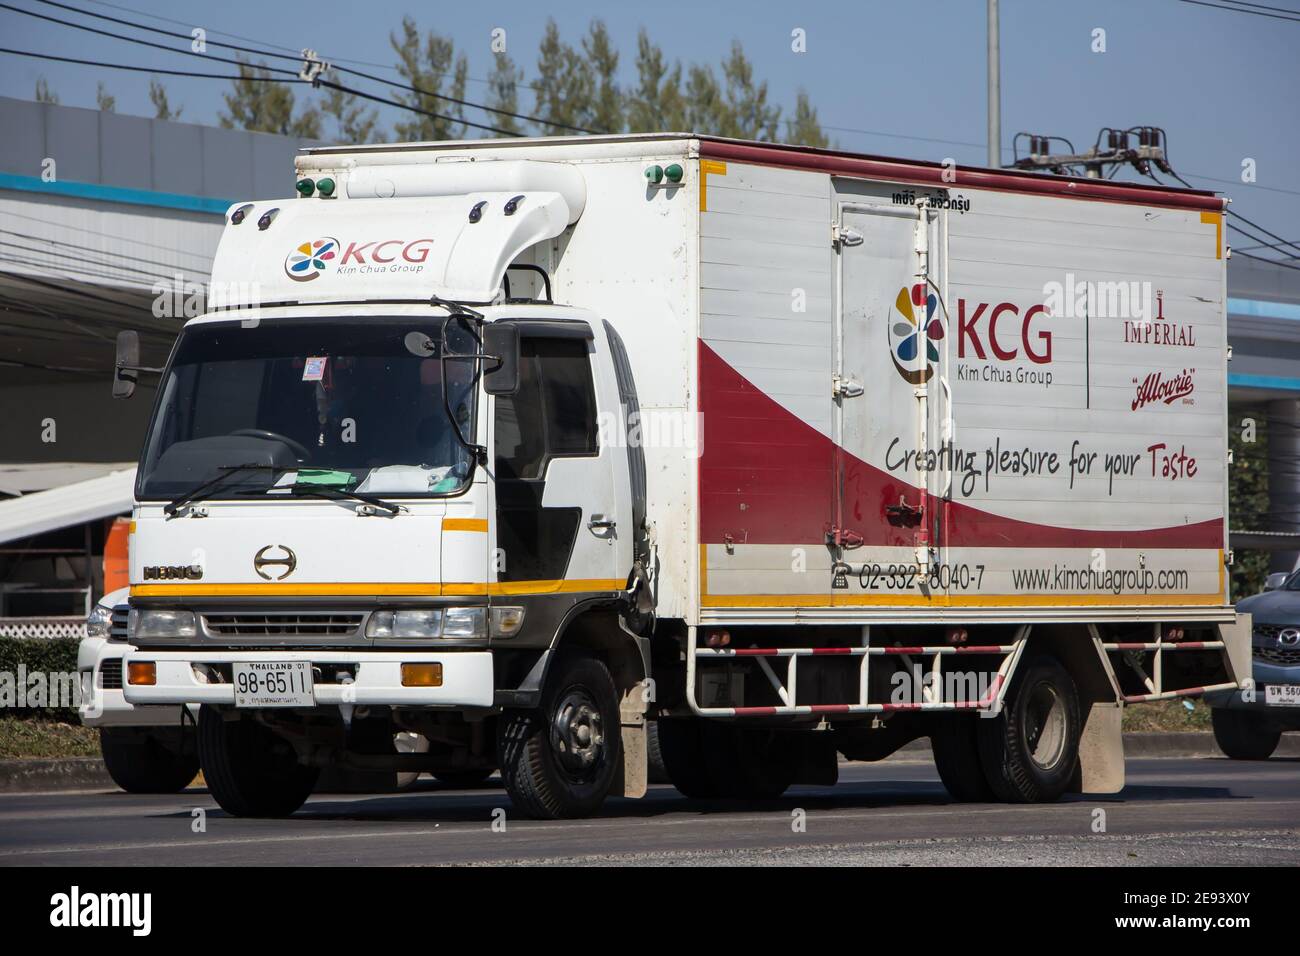 Chiangmai, Thaïlande - décembre 24 2020 : camion à conteneurs du Groupe KCG Kim Chua. Photo sur la route n°1001 à environ 8 km du centre ville, thaïlande. Banque D'Images